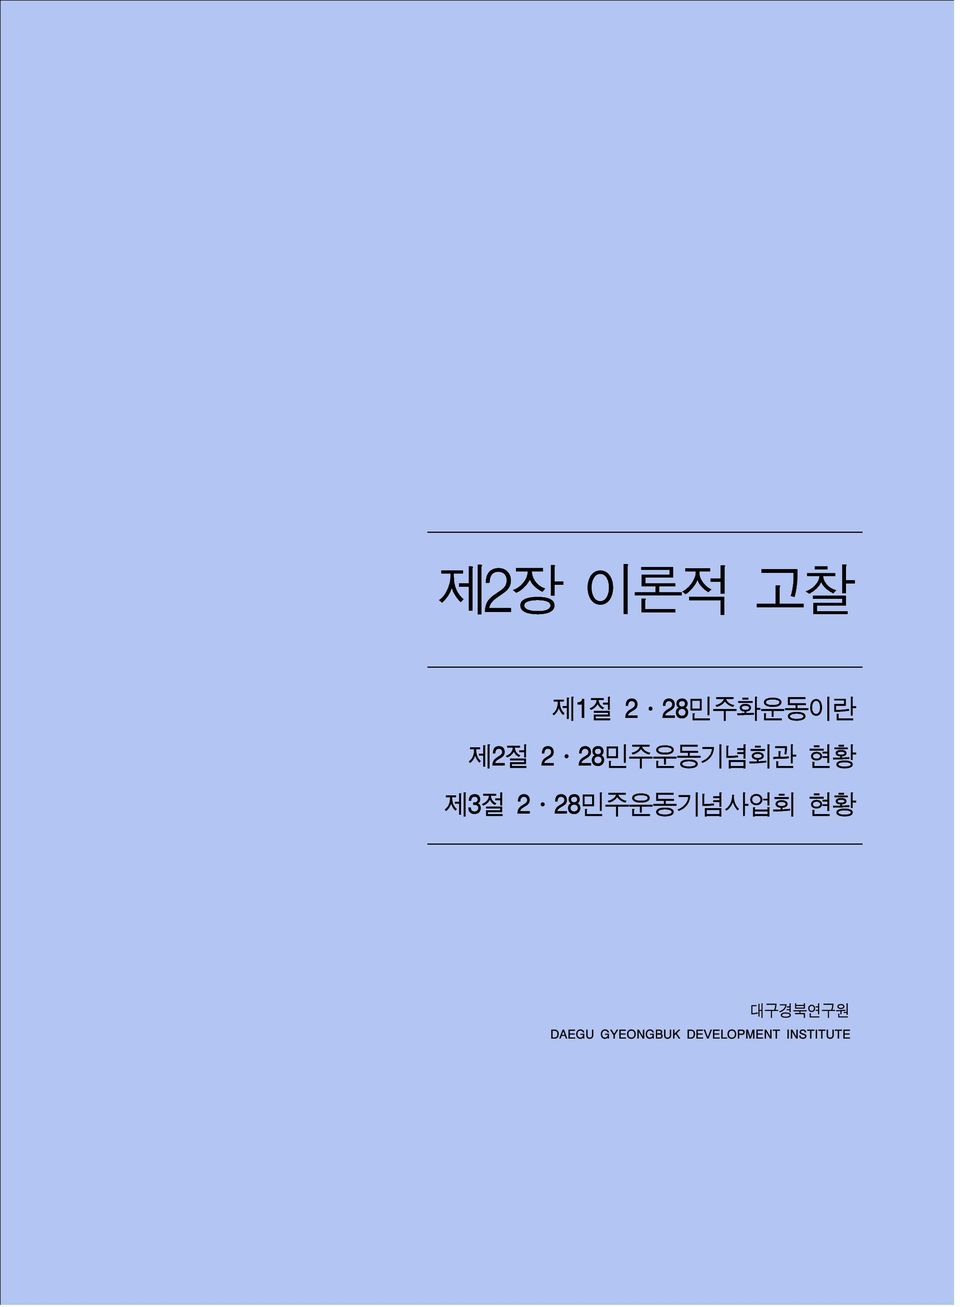 28민주운동기념사업회 현황 대구경북연구원 DAEGU